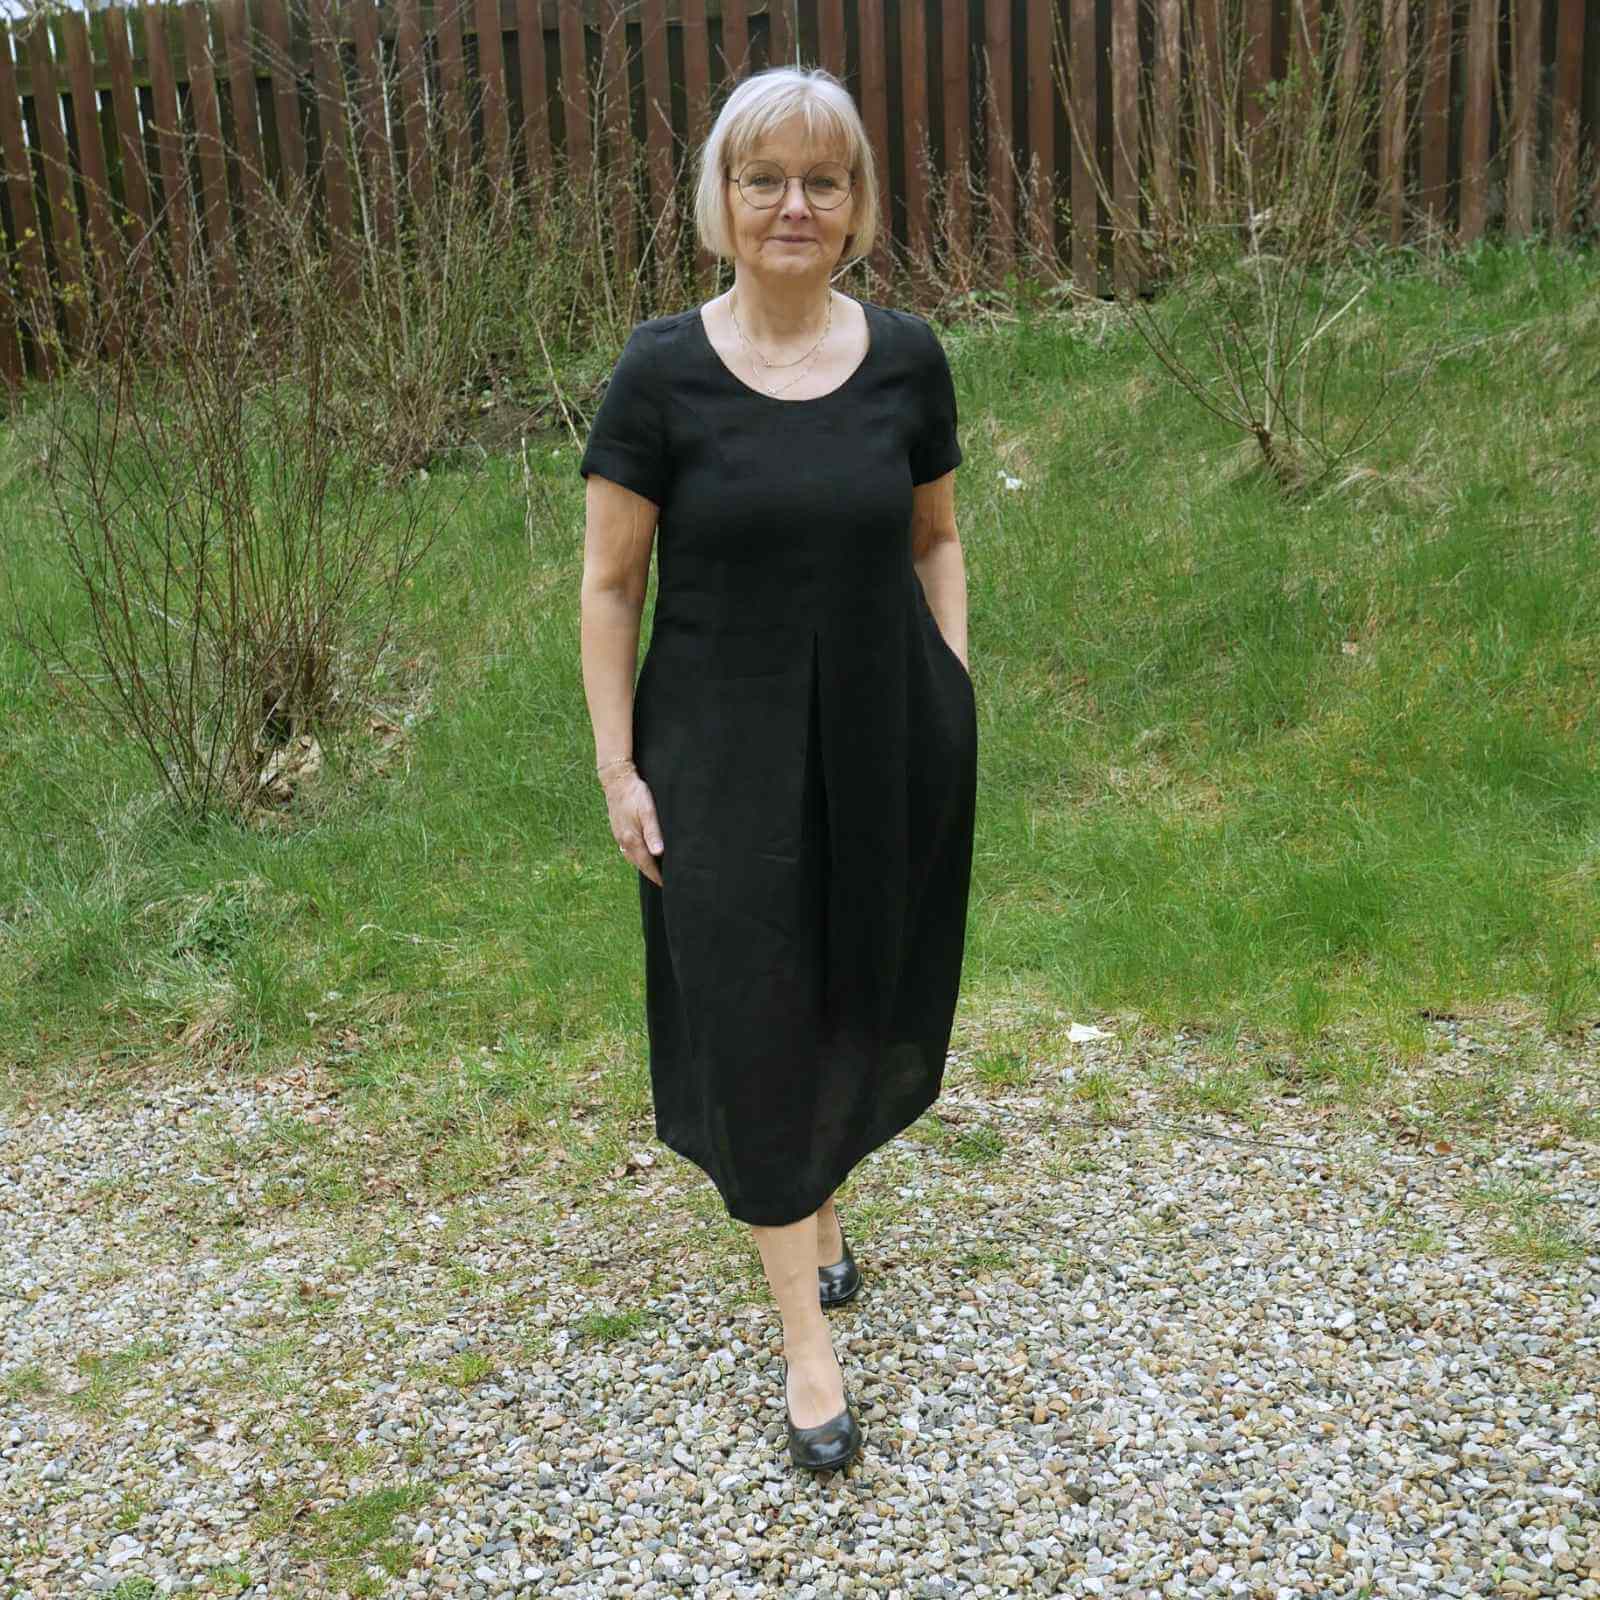 Anbi Jette i sort hørkjole med sorte sko på græs baggrund